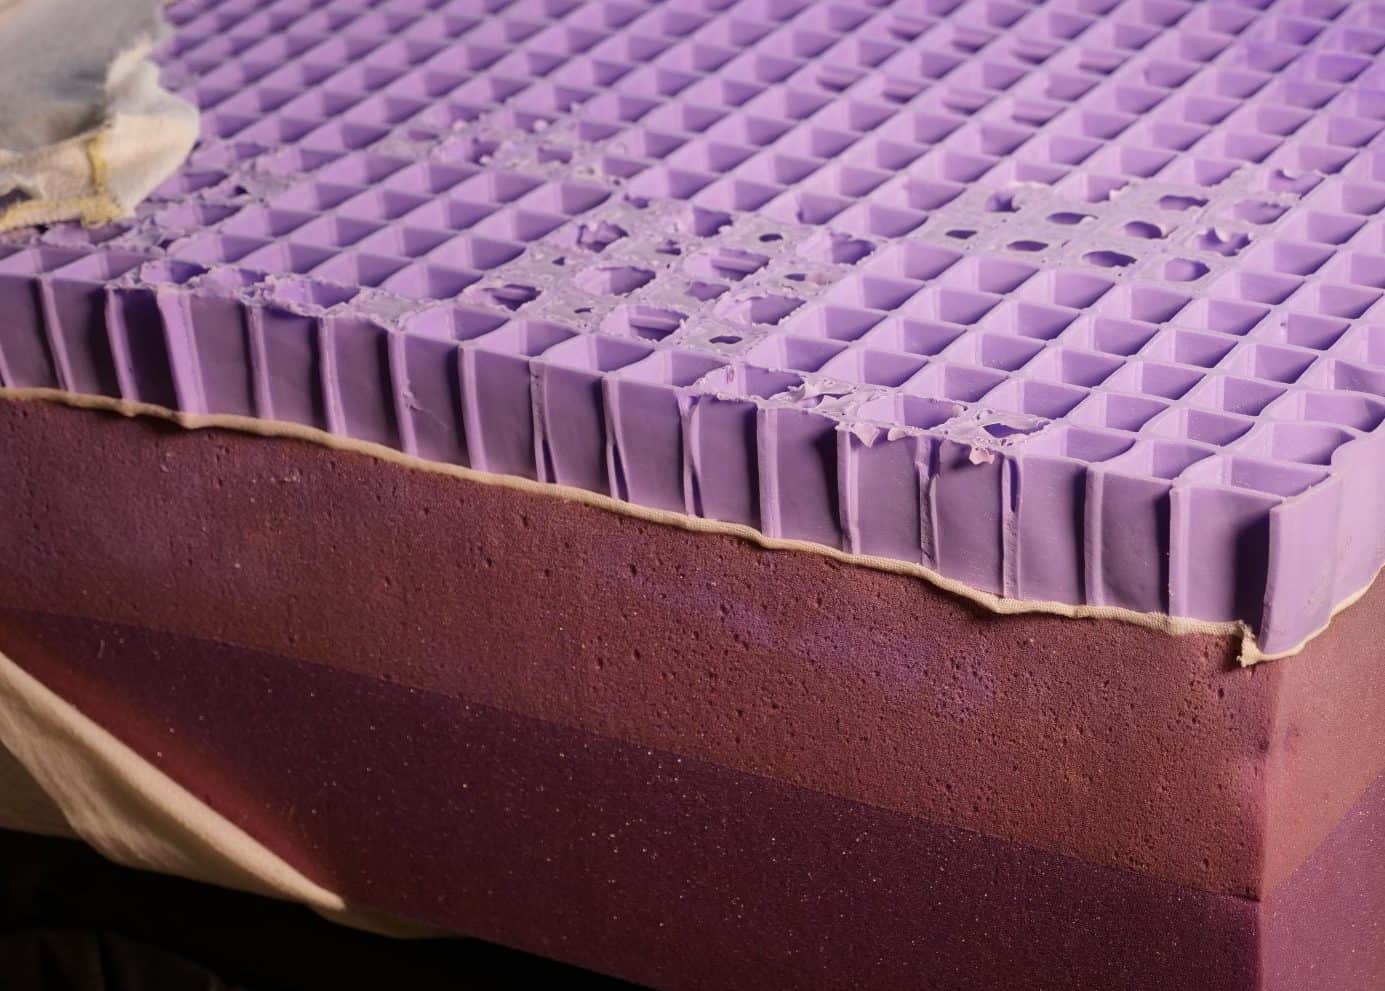 purple matress